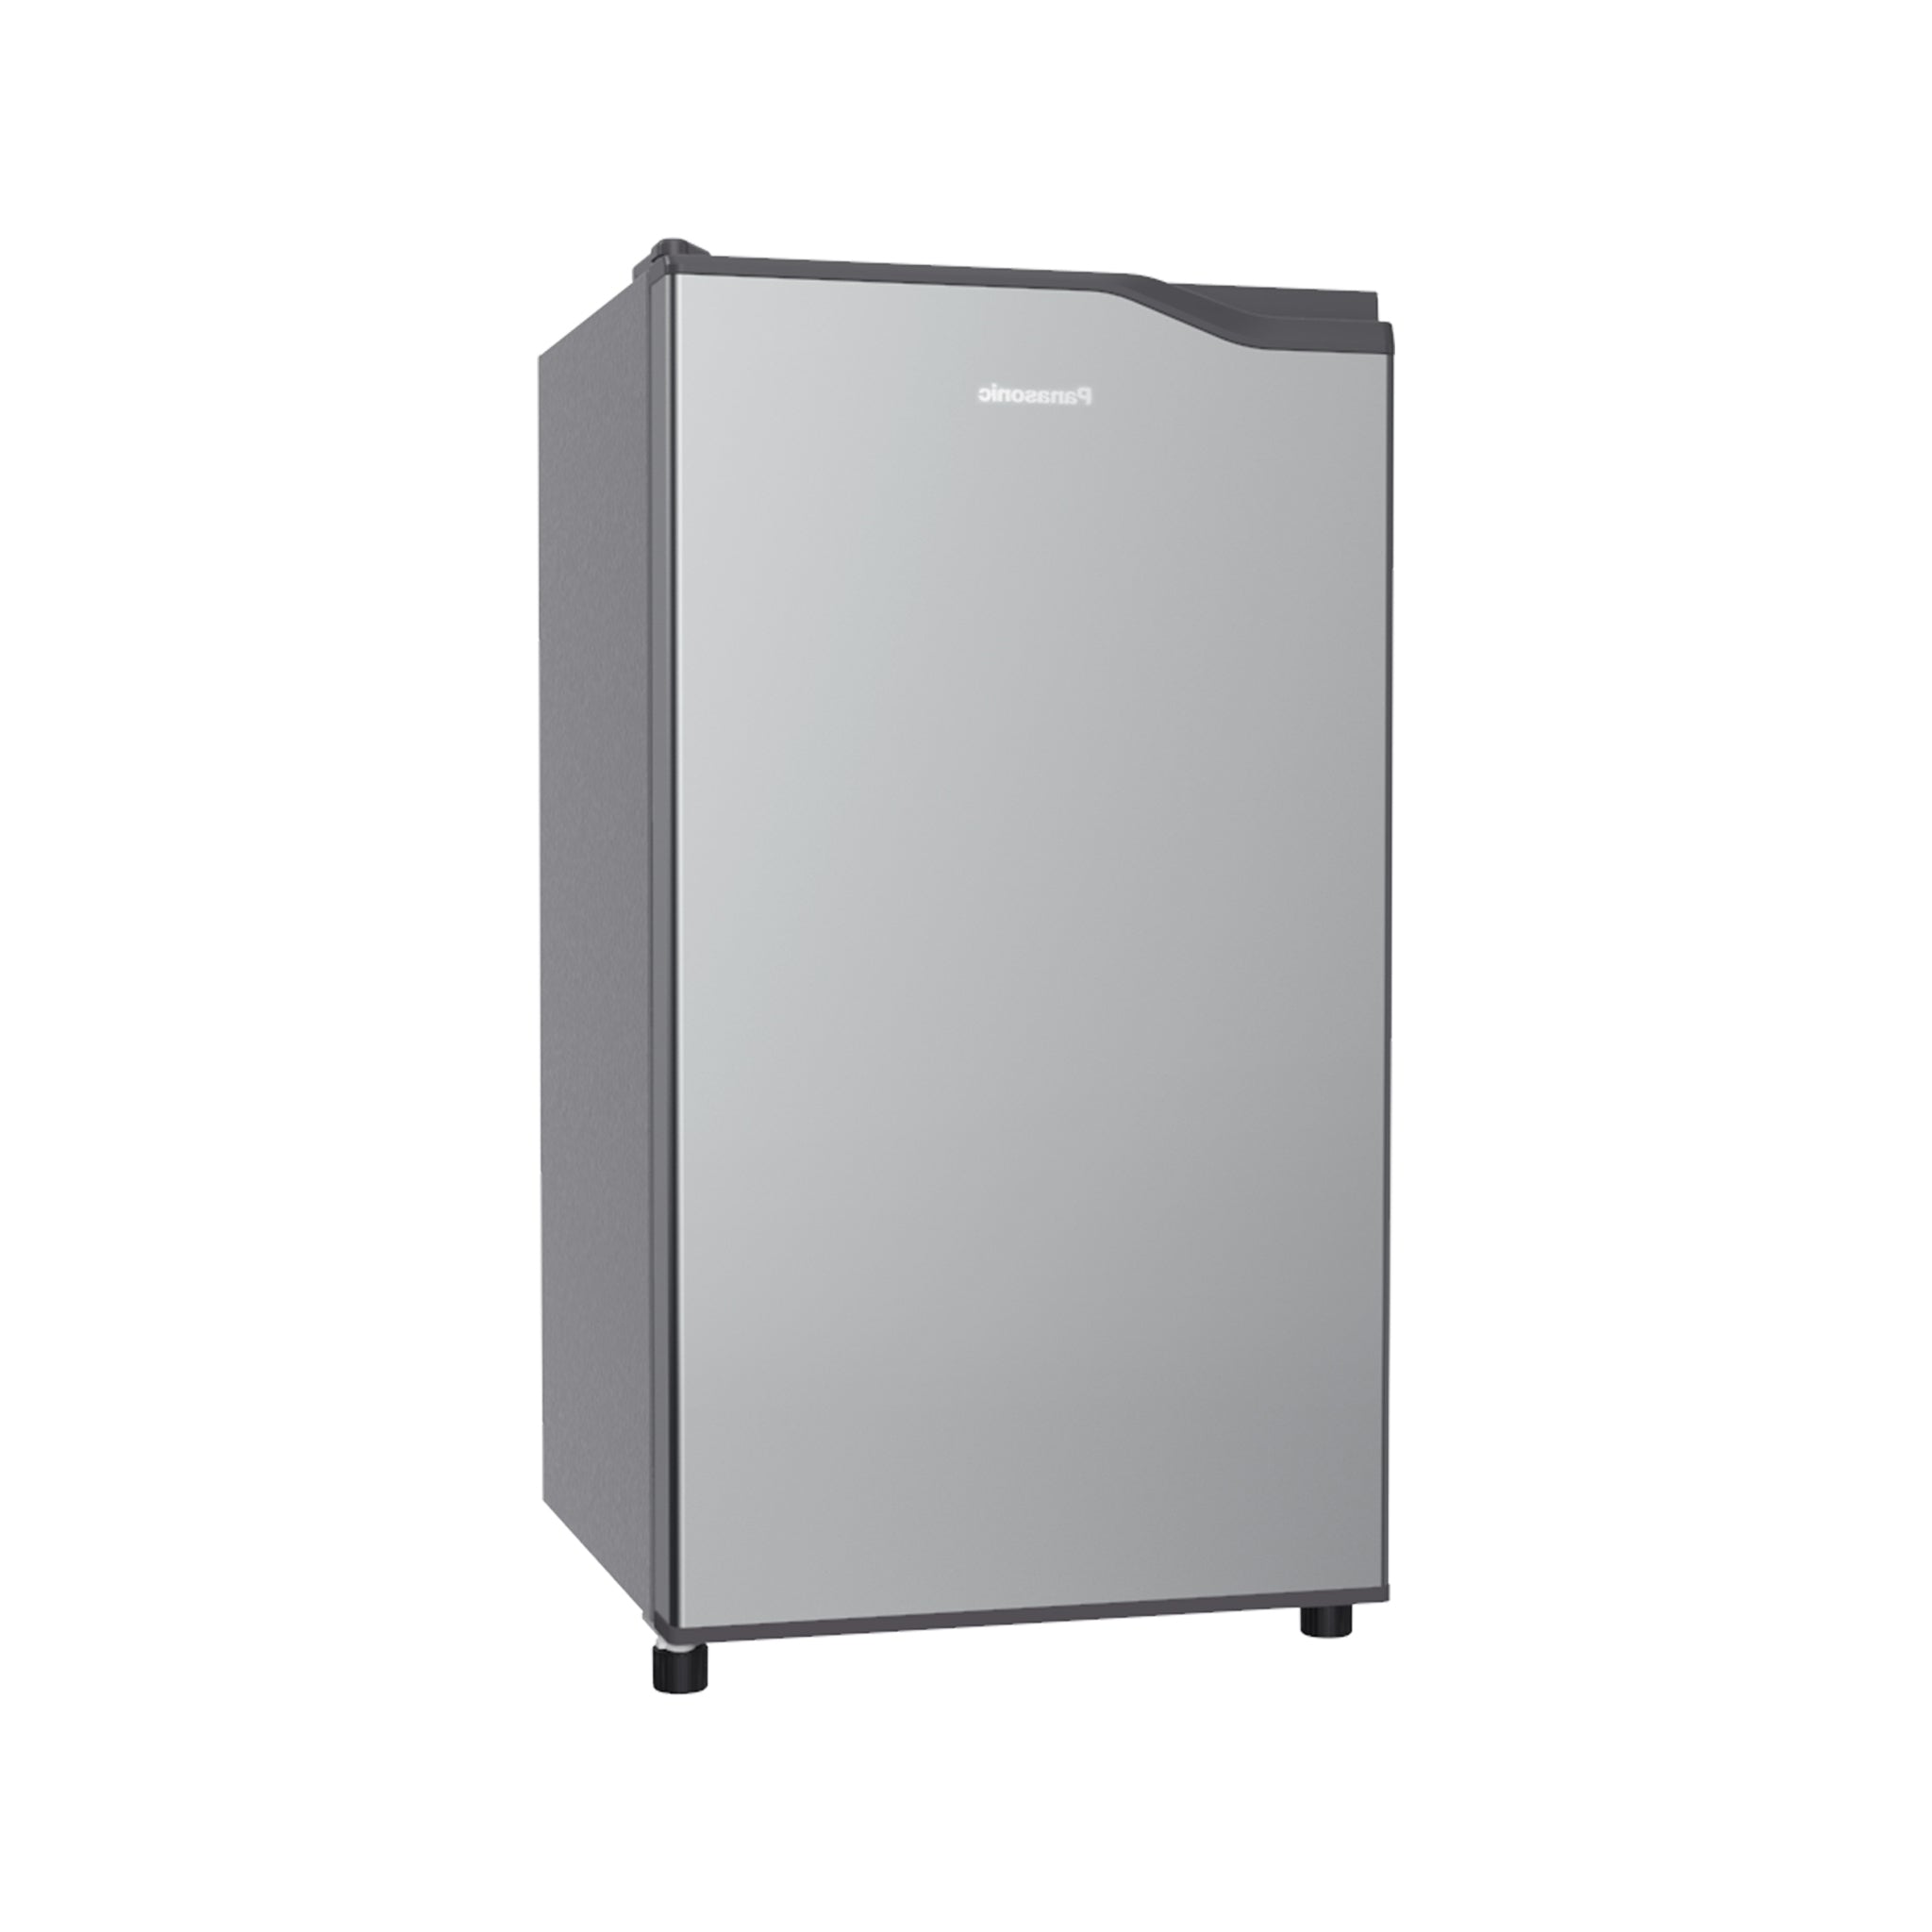 PANASONIC NR-AQ151NS 1-Door Refrigerator Panasonic